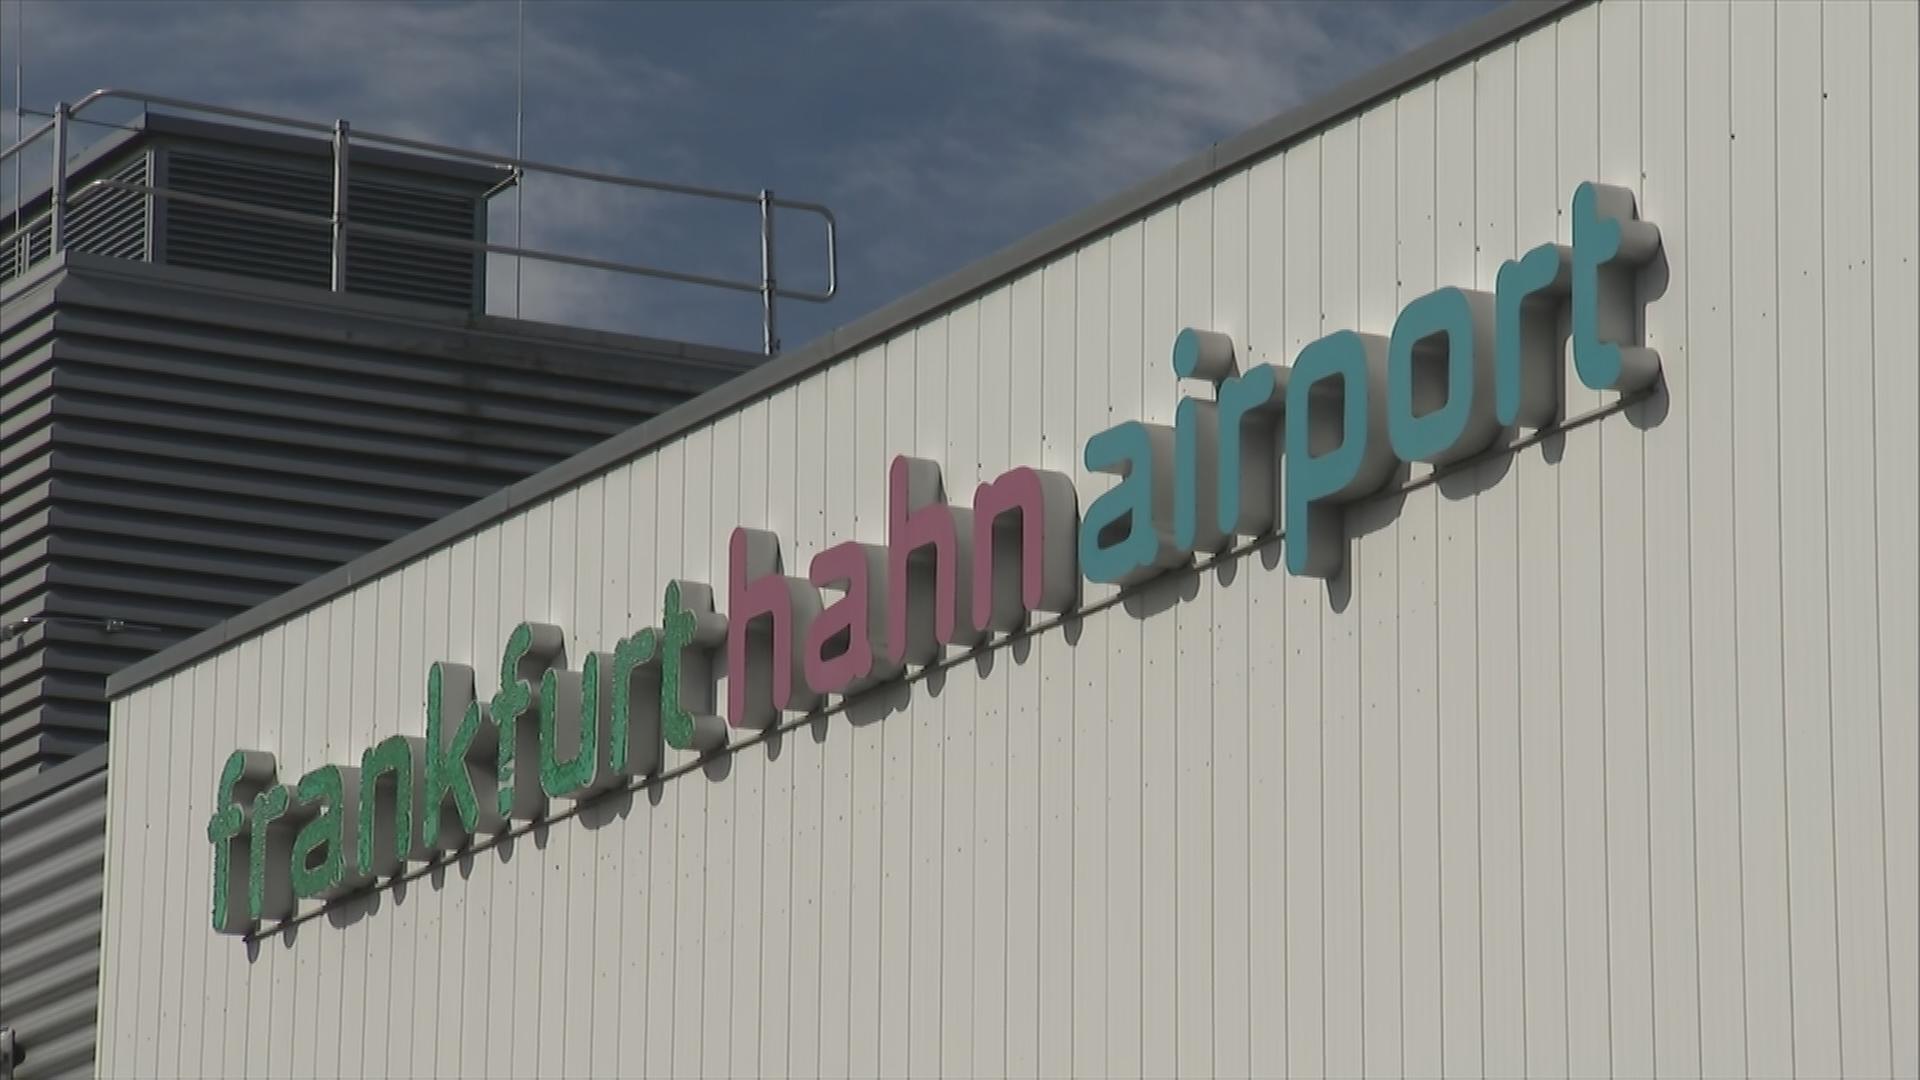 Auf dem Bild ist das Logo des Flughafen Hahns auf dem Gebäude zu sehen.